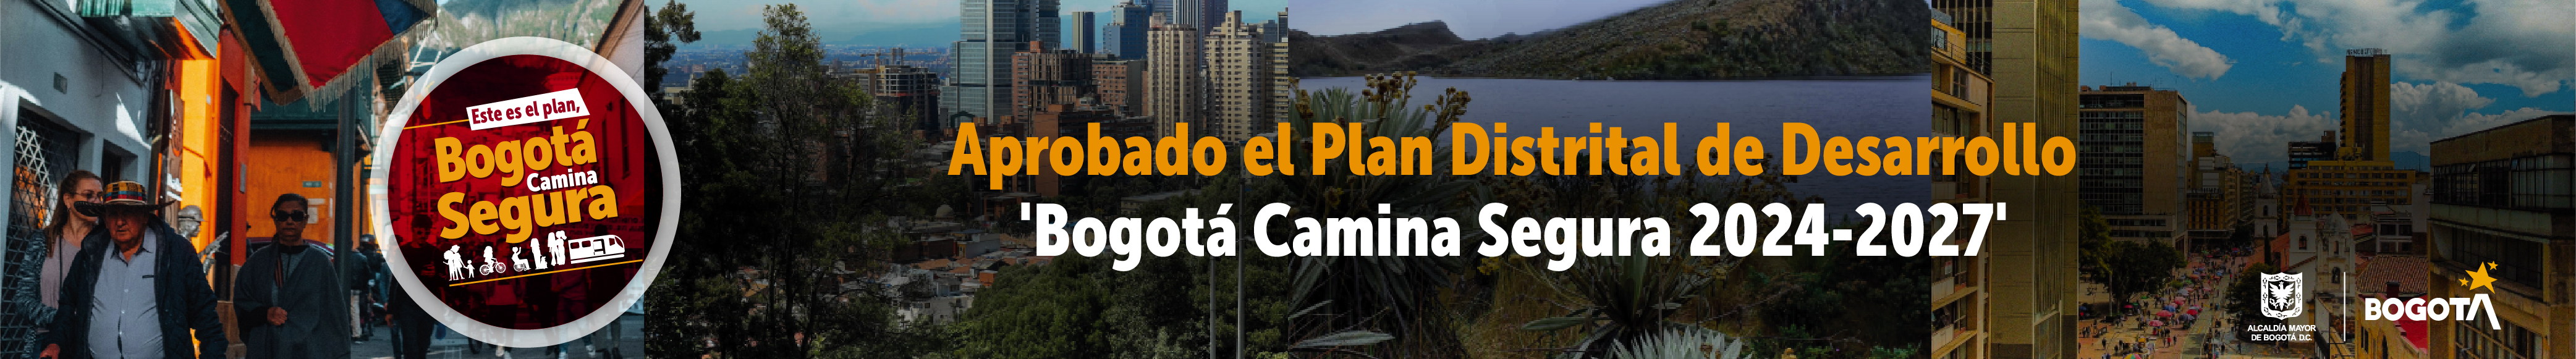 Aprobado el Plan Distrital de Desarrollo 'Bogotá Camina Segura 2024-2027'